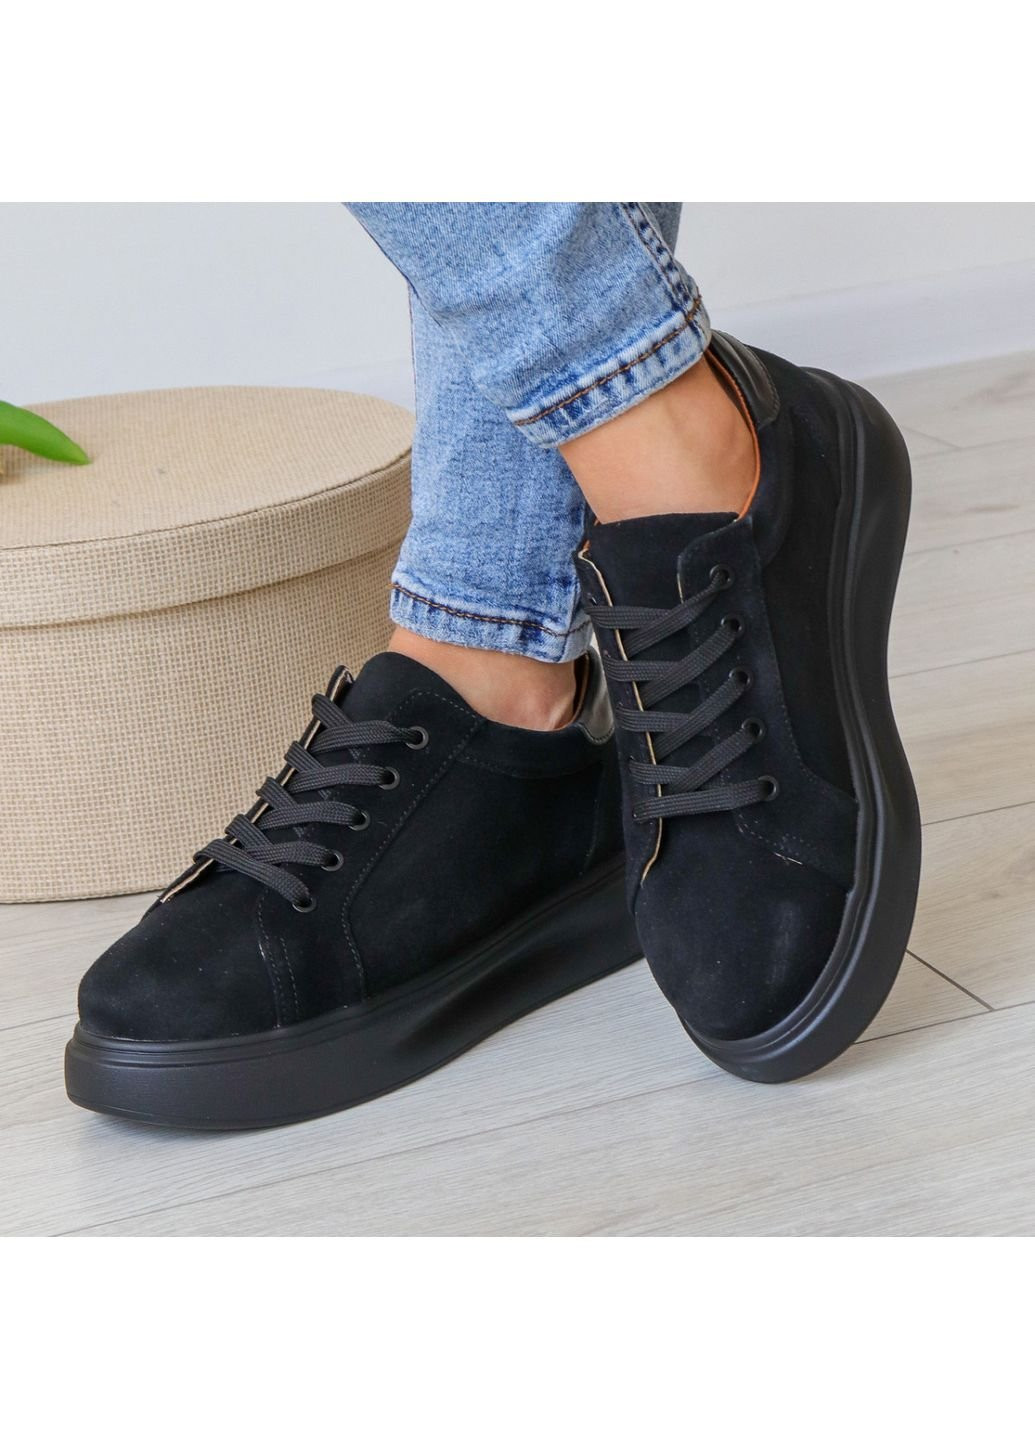 Чорні осінні кросівки жіночі tempest 3146 36 23,5 см чорний Fashion